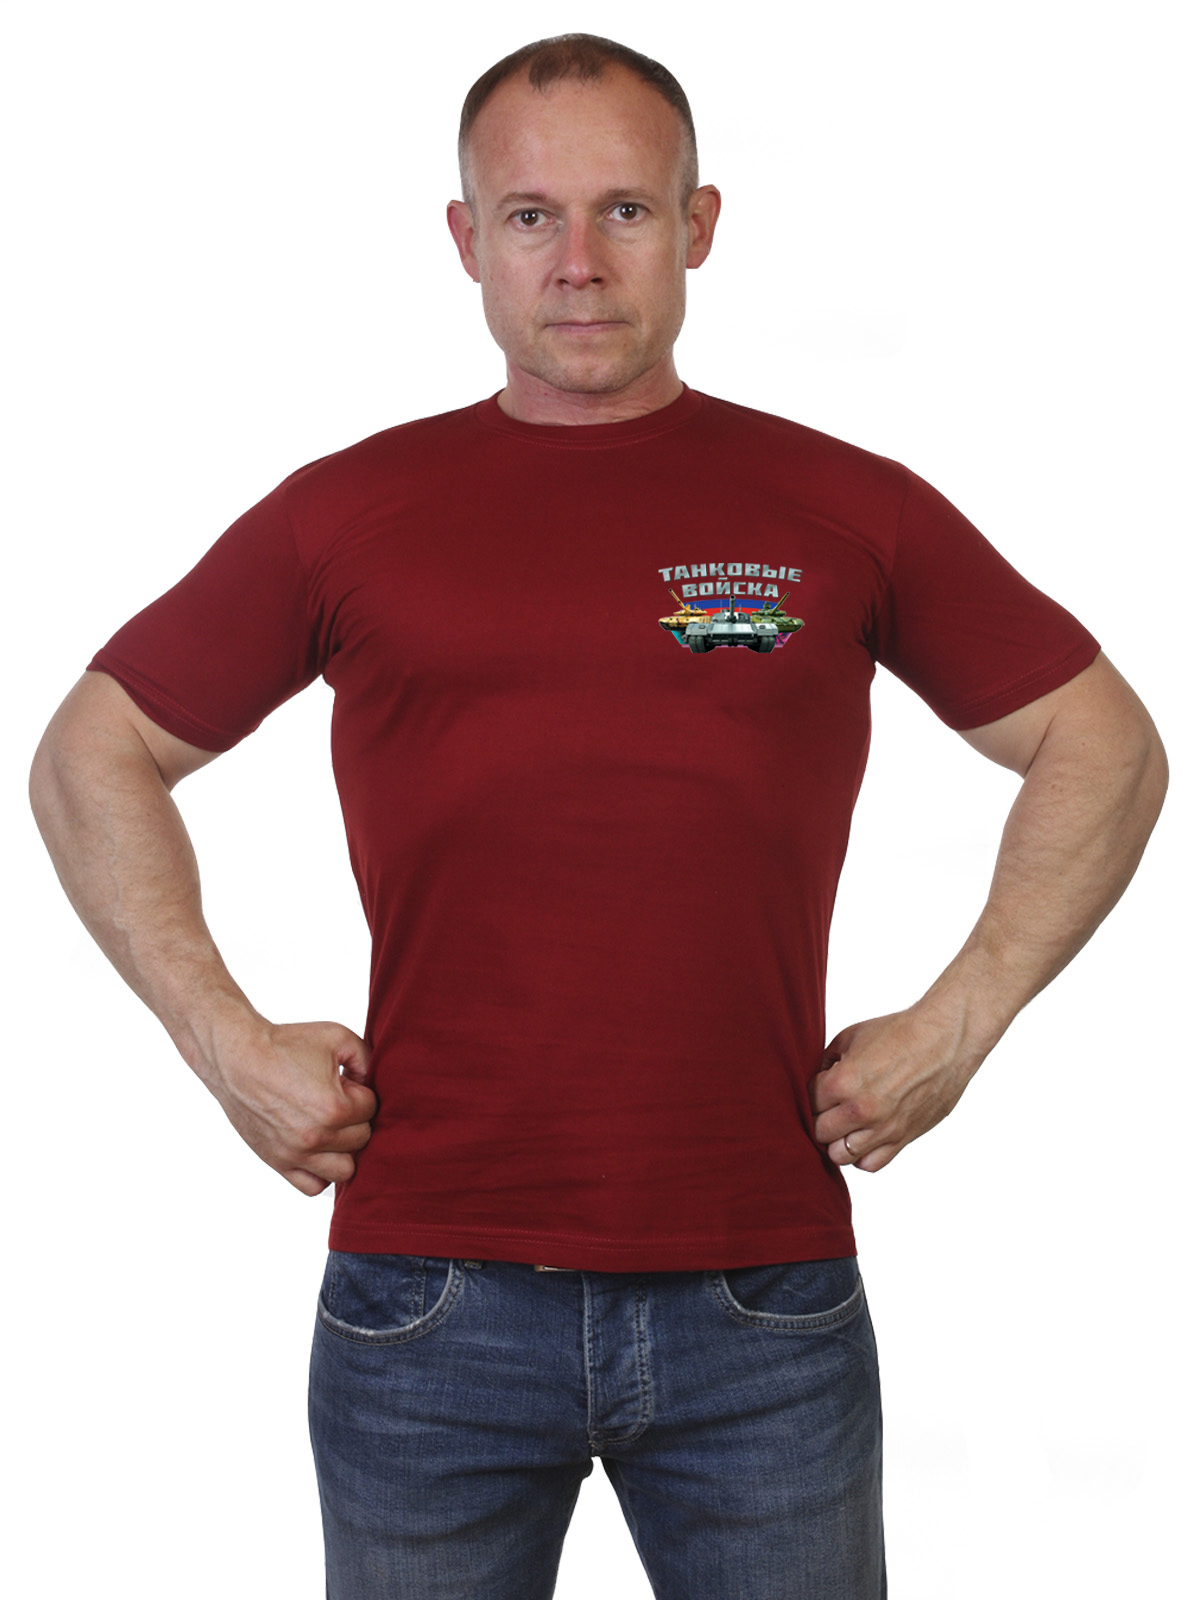 Краповая футболка с символикой Танковых войск 